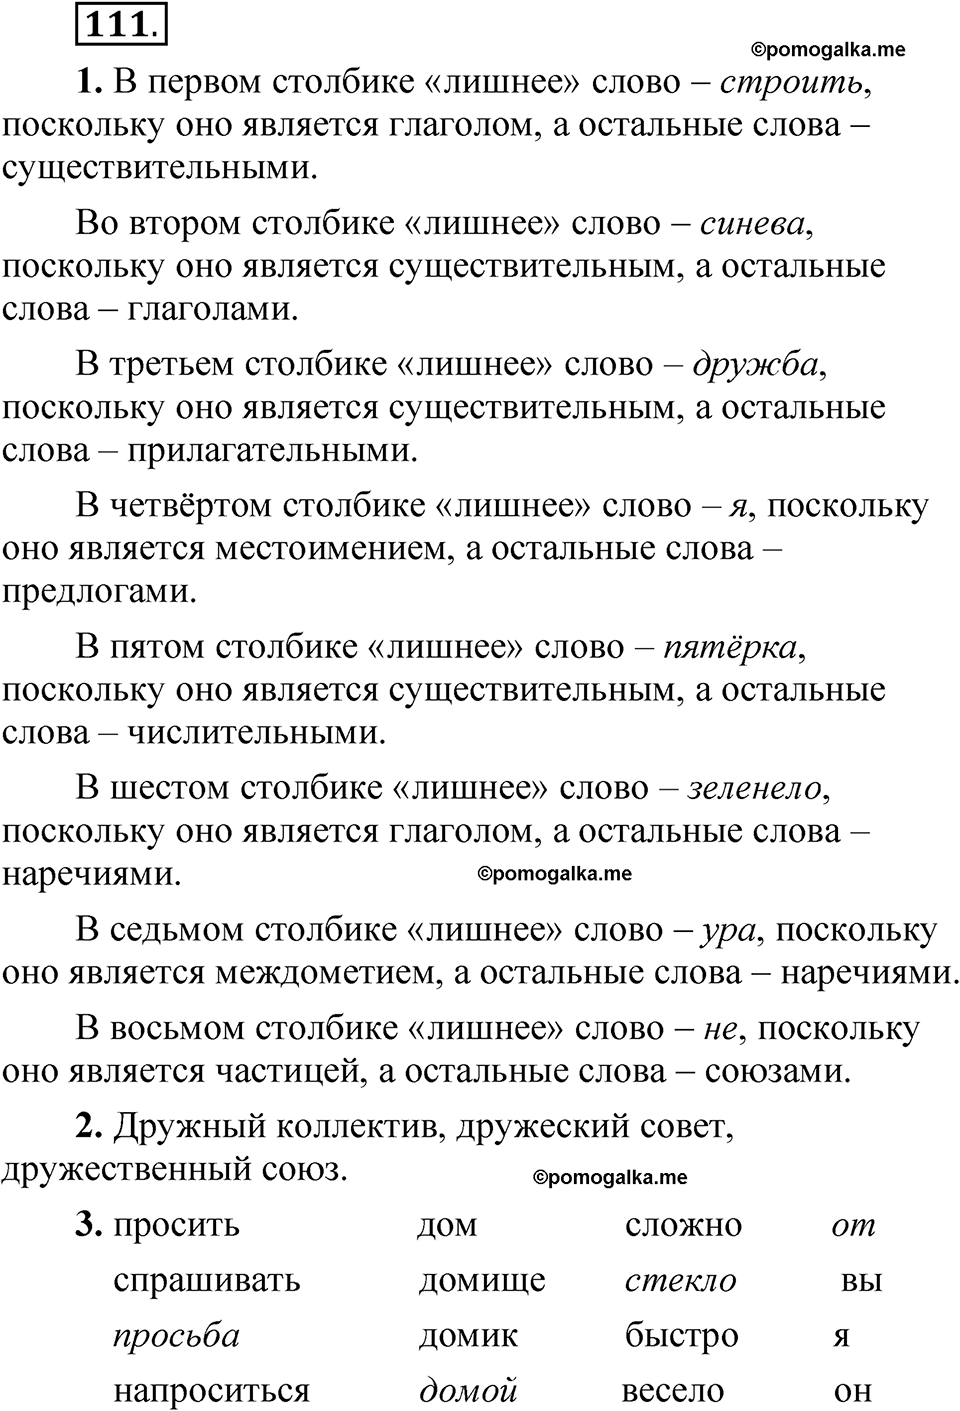 страница 71 упражнение 111 русский язык 5 класс Быстрова, Кибирева 2 часть 2021 год